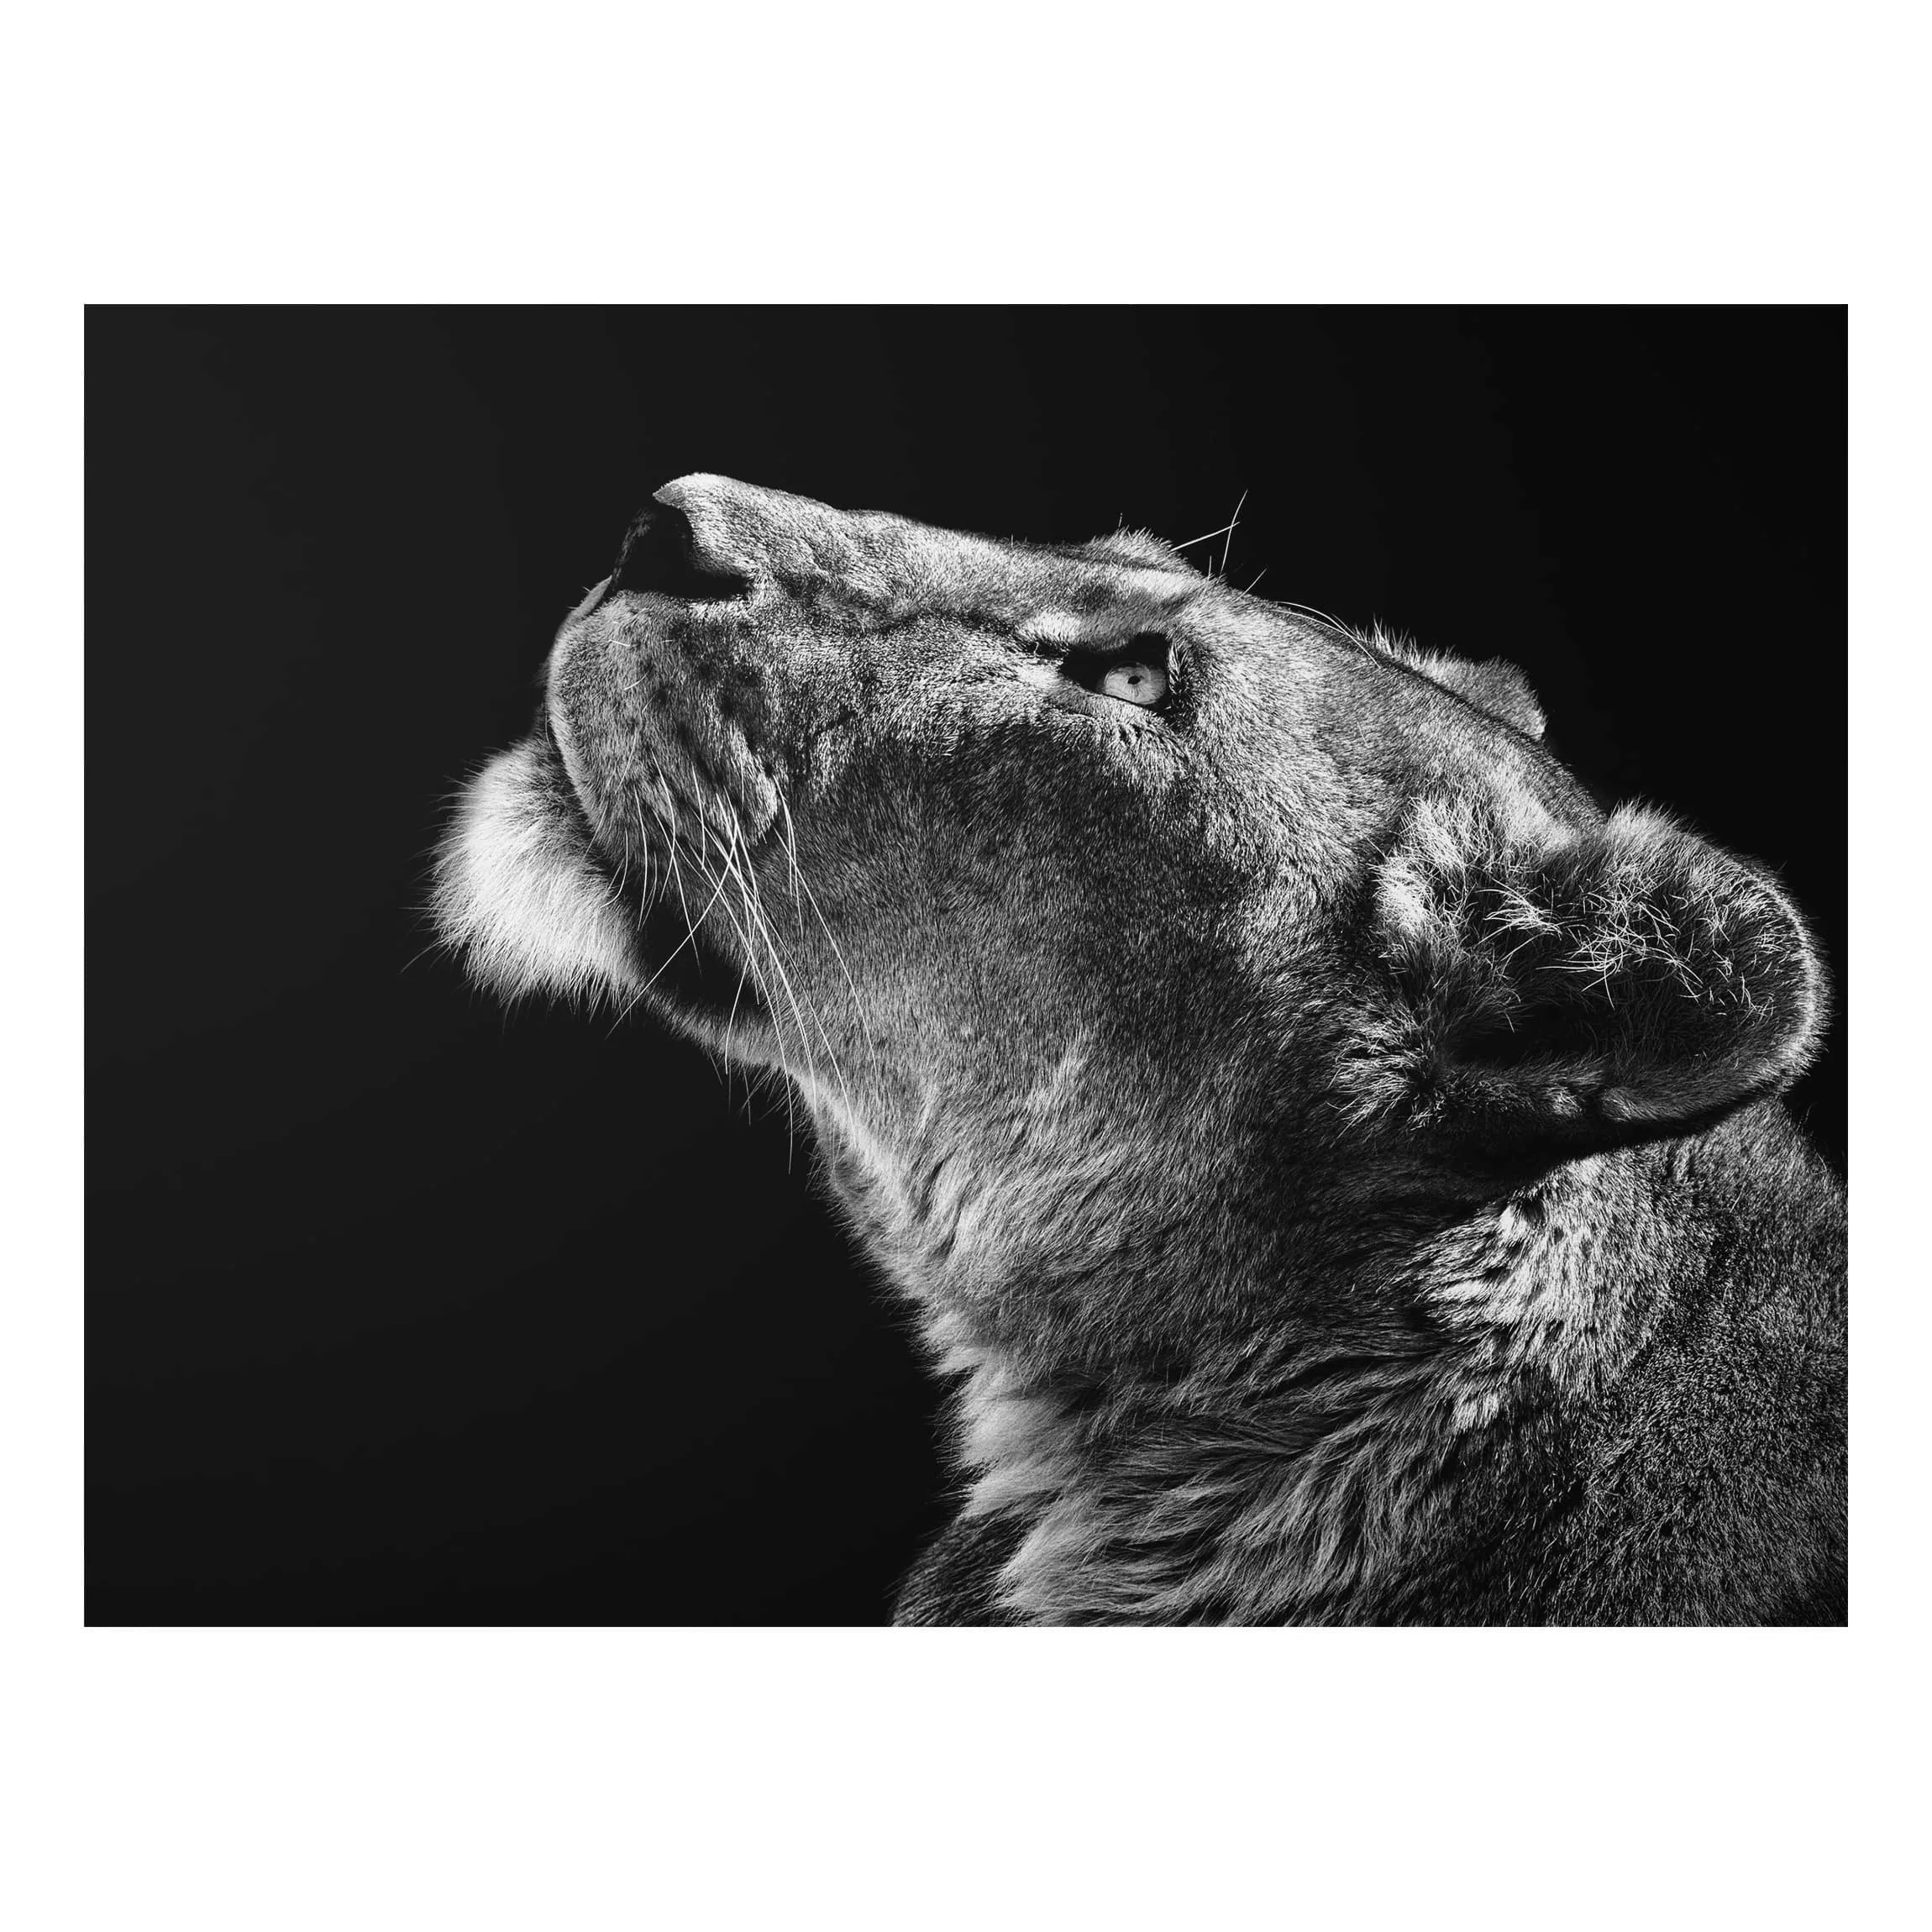 Alu-Dibond Bild Schwarz-Weiß - Querformat 4:3 Portrait einer Löwin günstig online kaufen